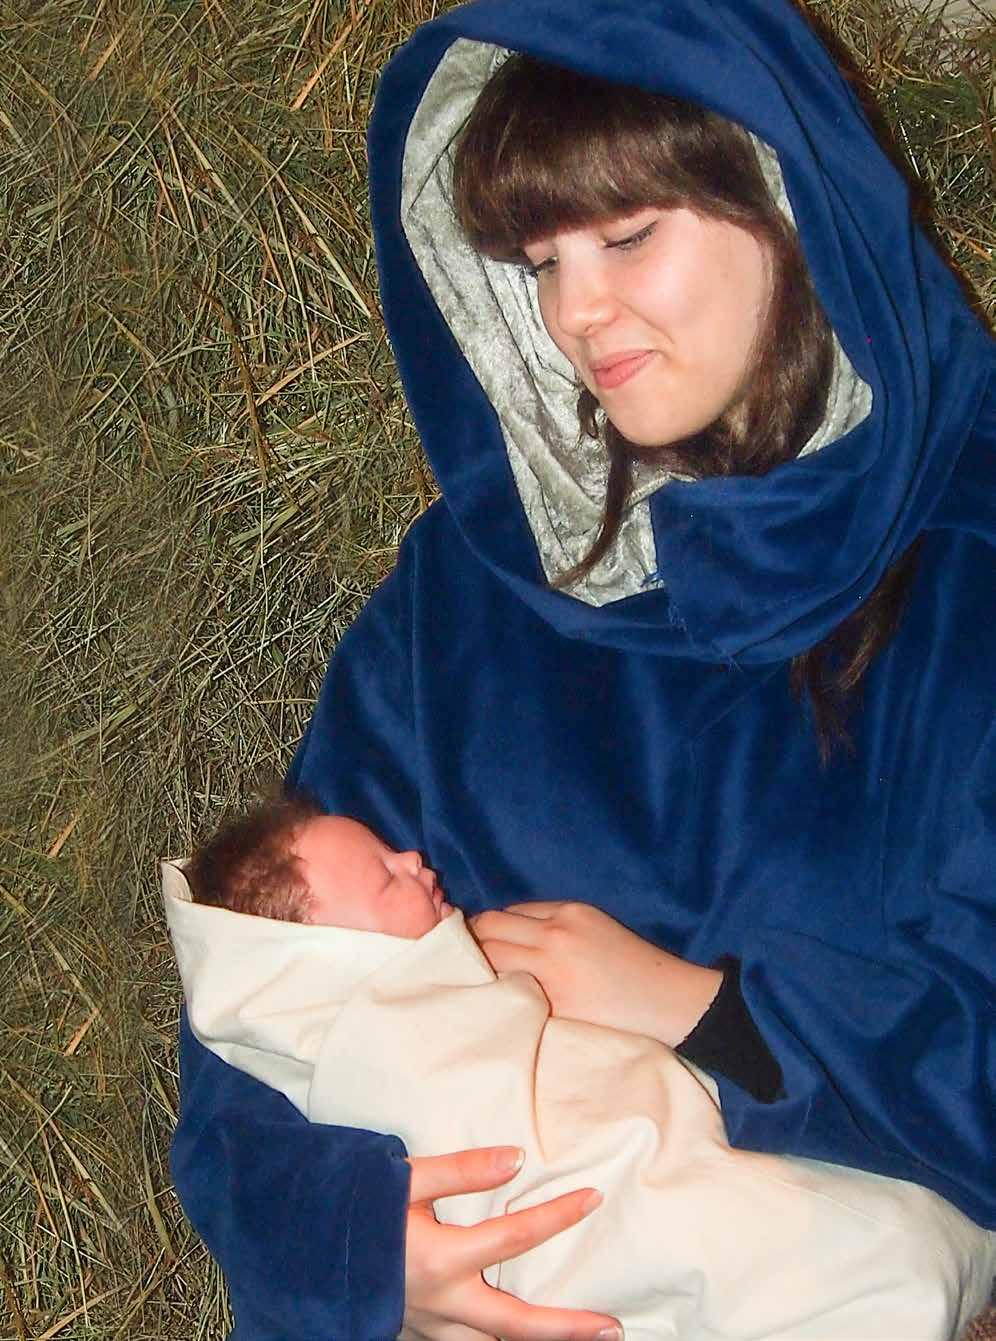 Vivamon Raamattukylän joulunäytelmä on nimensä mukaisesti täynnä ihmetystä ja iloa. Kaiken keskipisteenä on pieni Jeesus-lapsi.